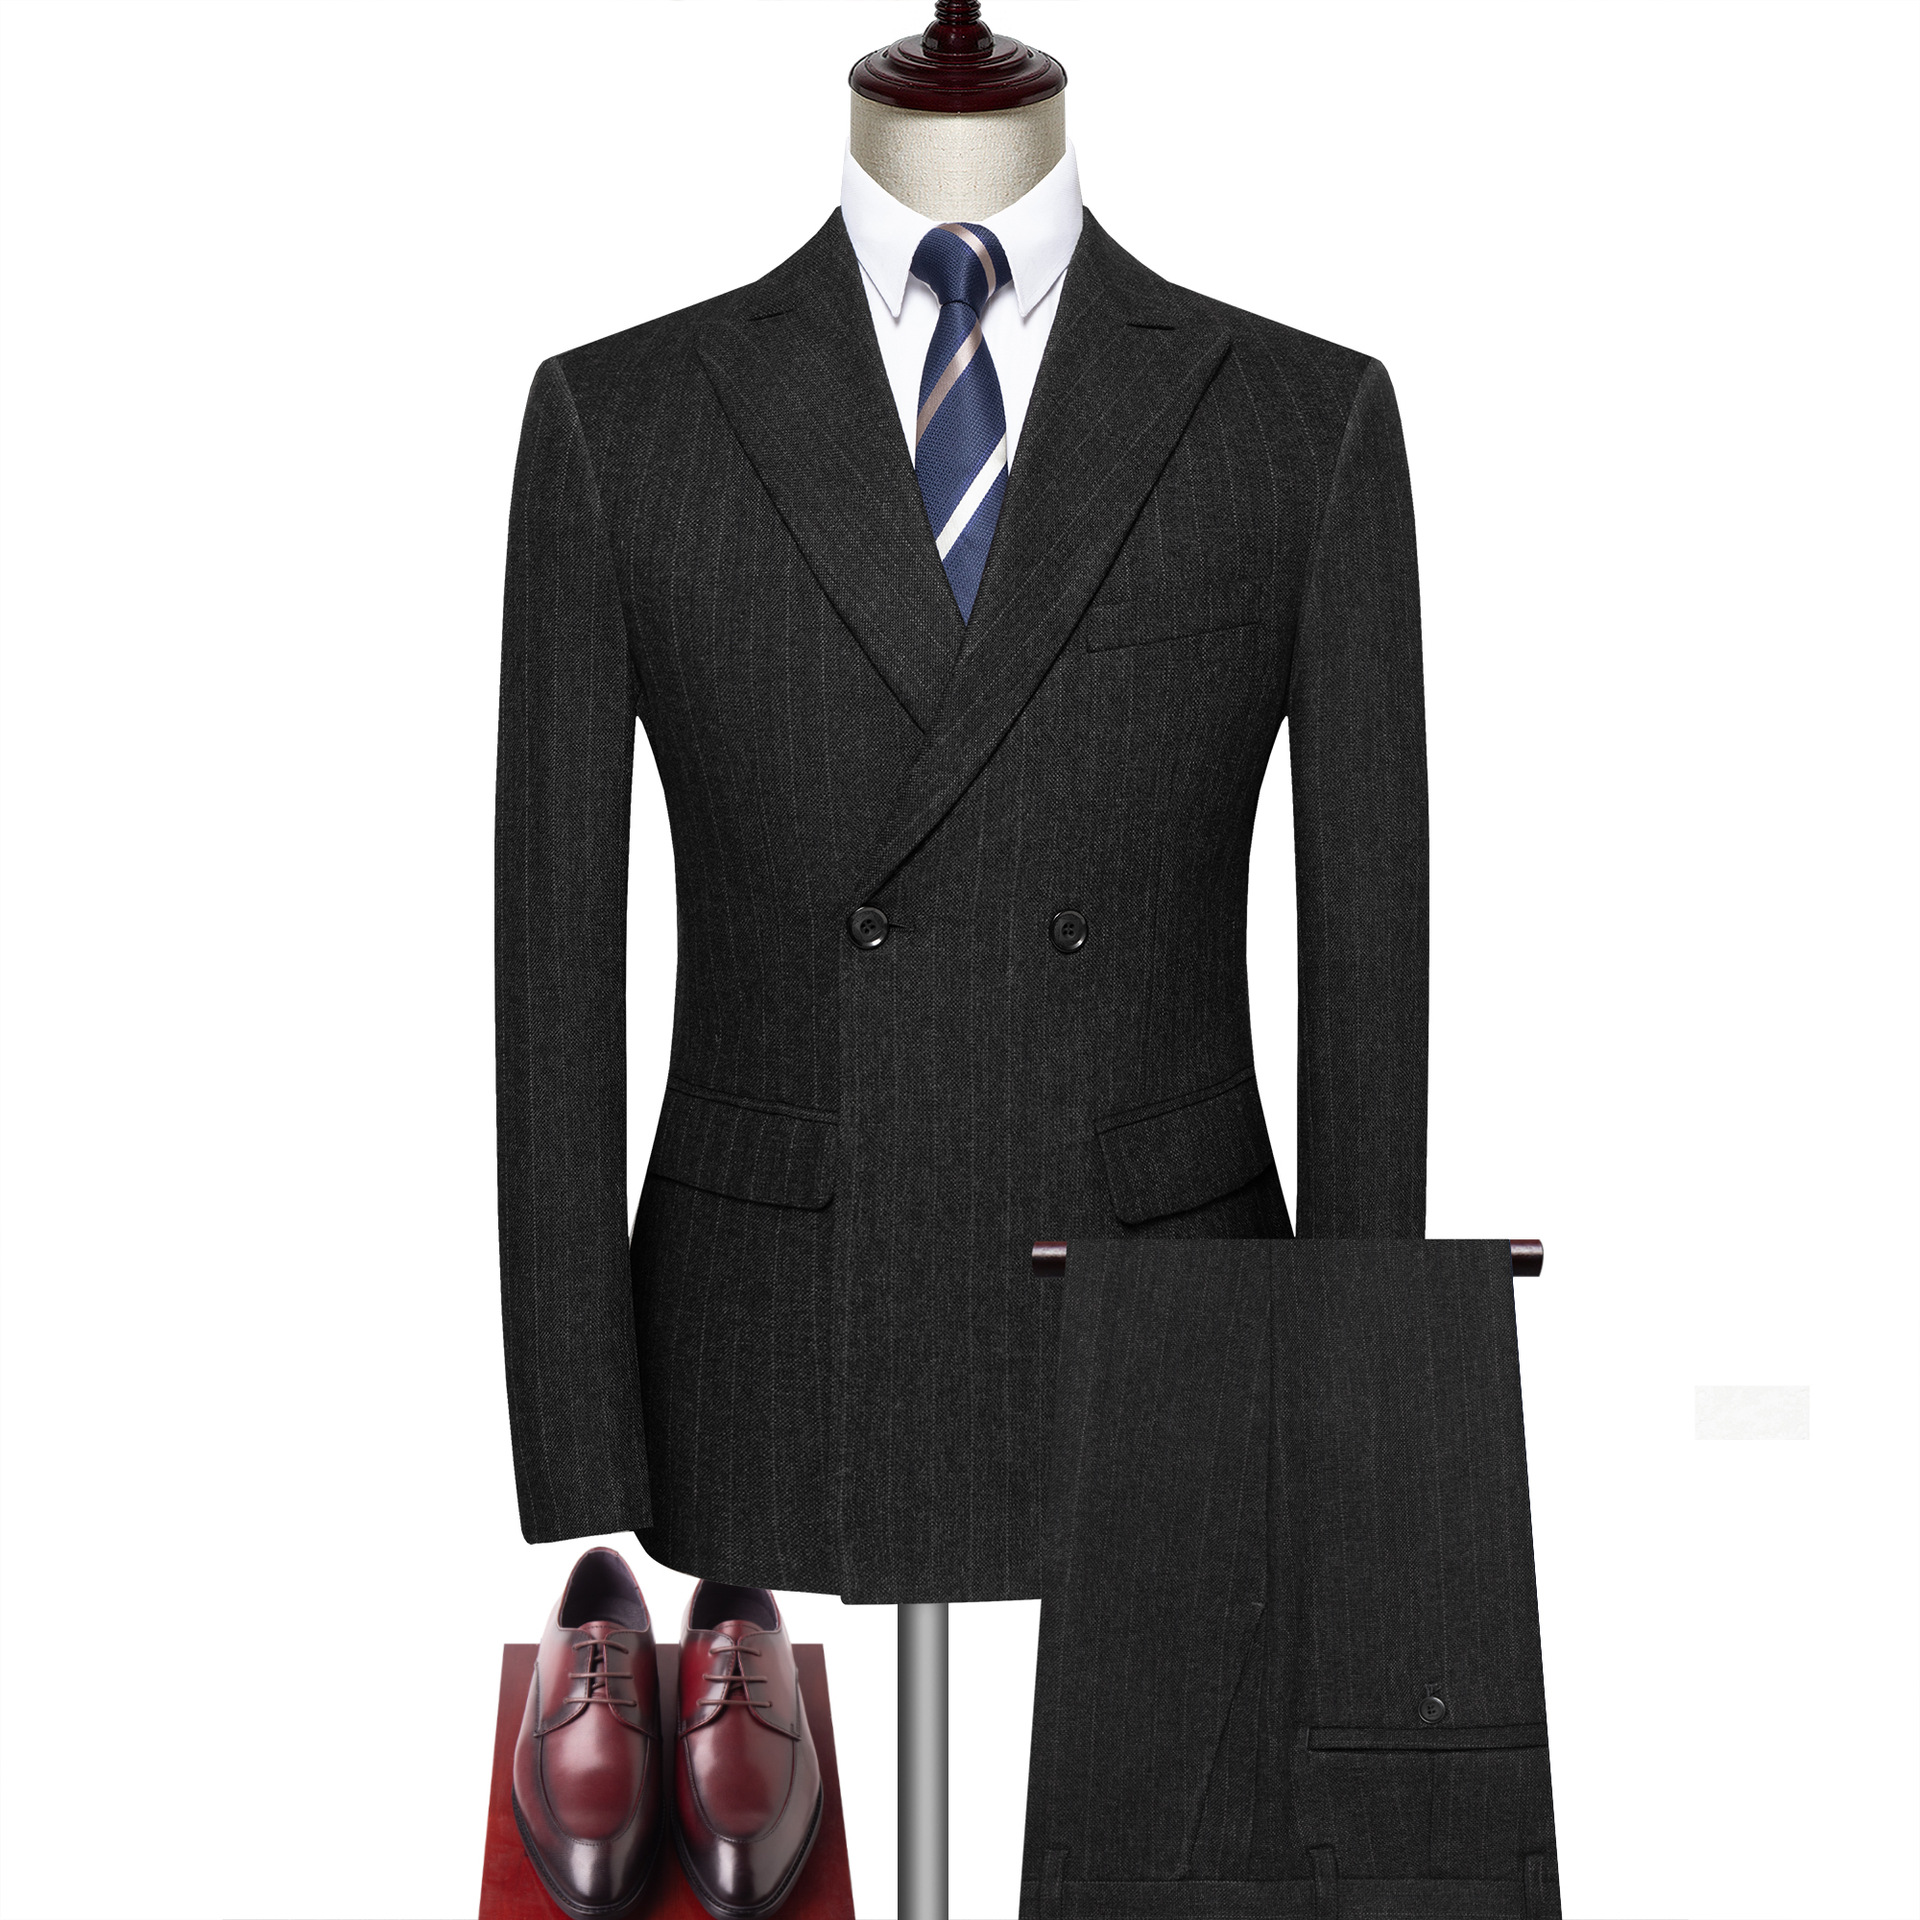 407A_tailor_tailors_bespoke_tailoring_tuxedo_tux_wedding_black_tie_suit_suits_singapore_business